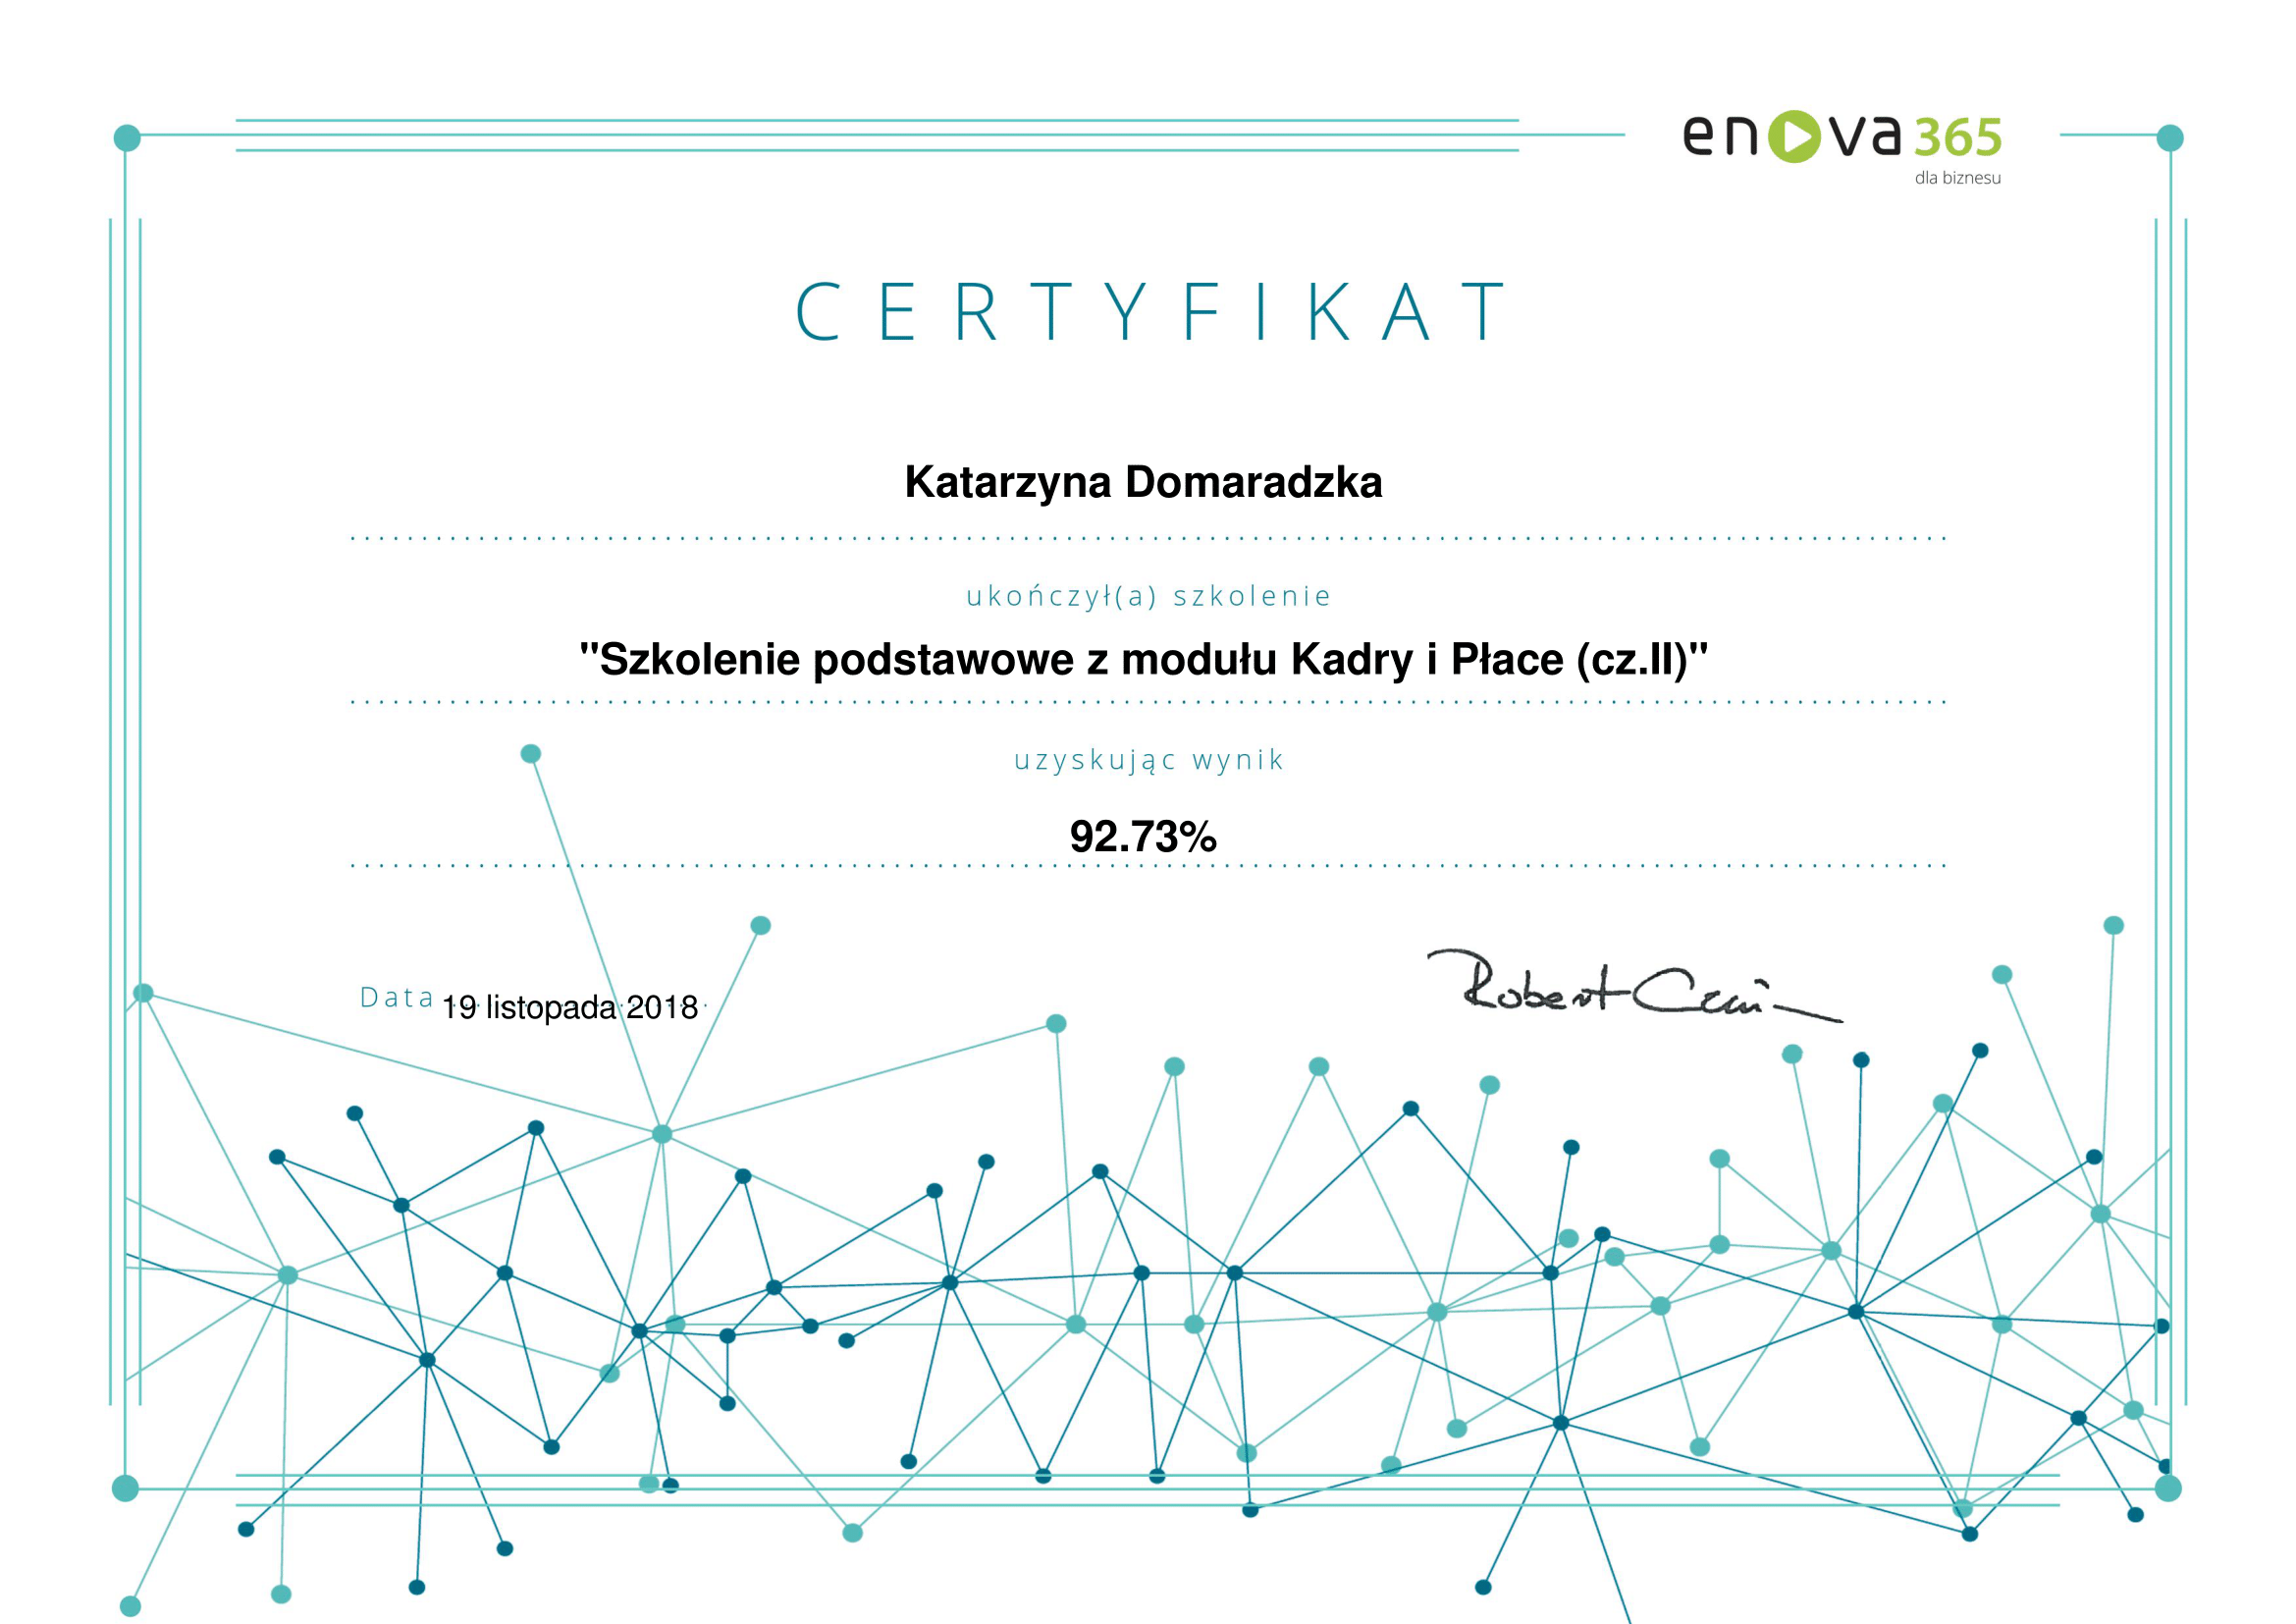 enova365_Certyfikat_podstawowy_Kadry_Płace_czII